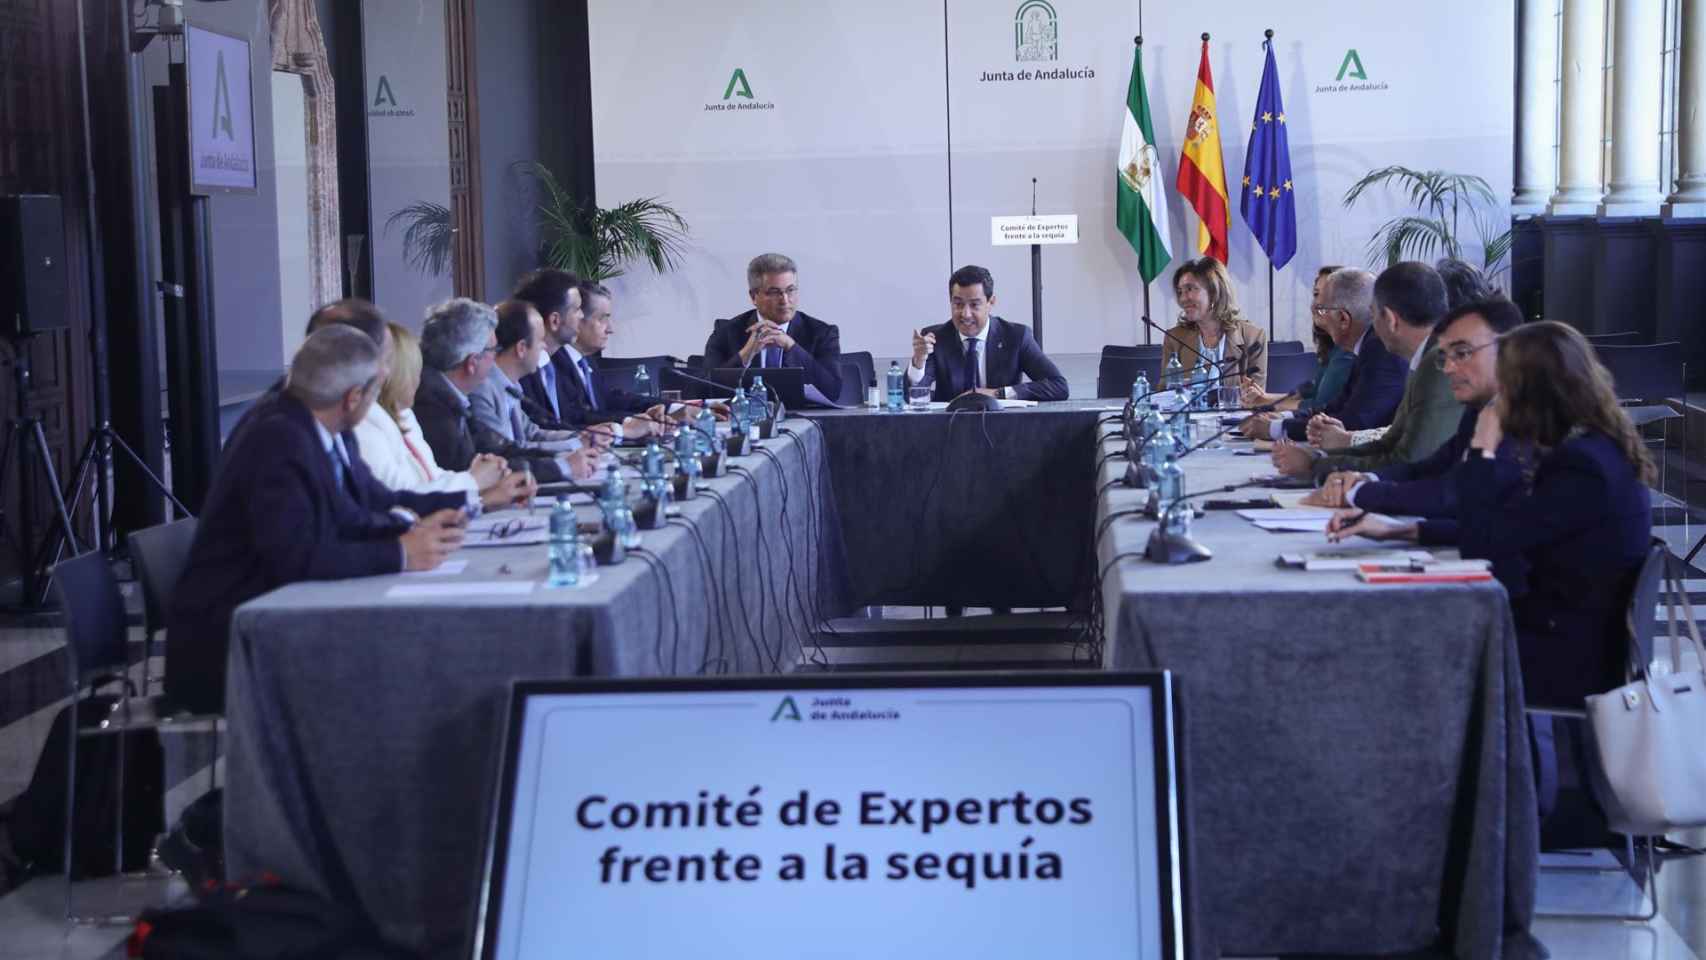 El presidente de la Junta de Andalucía, Juanma Moreno, preside el comité de expertos de la sequía.